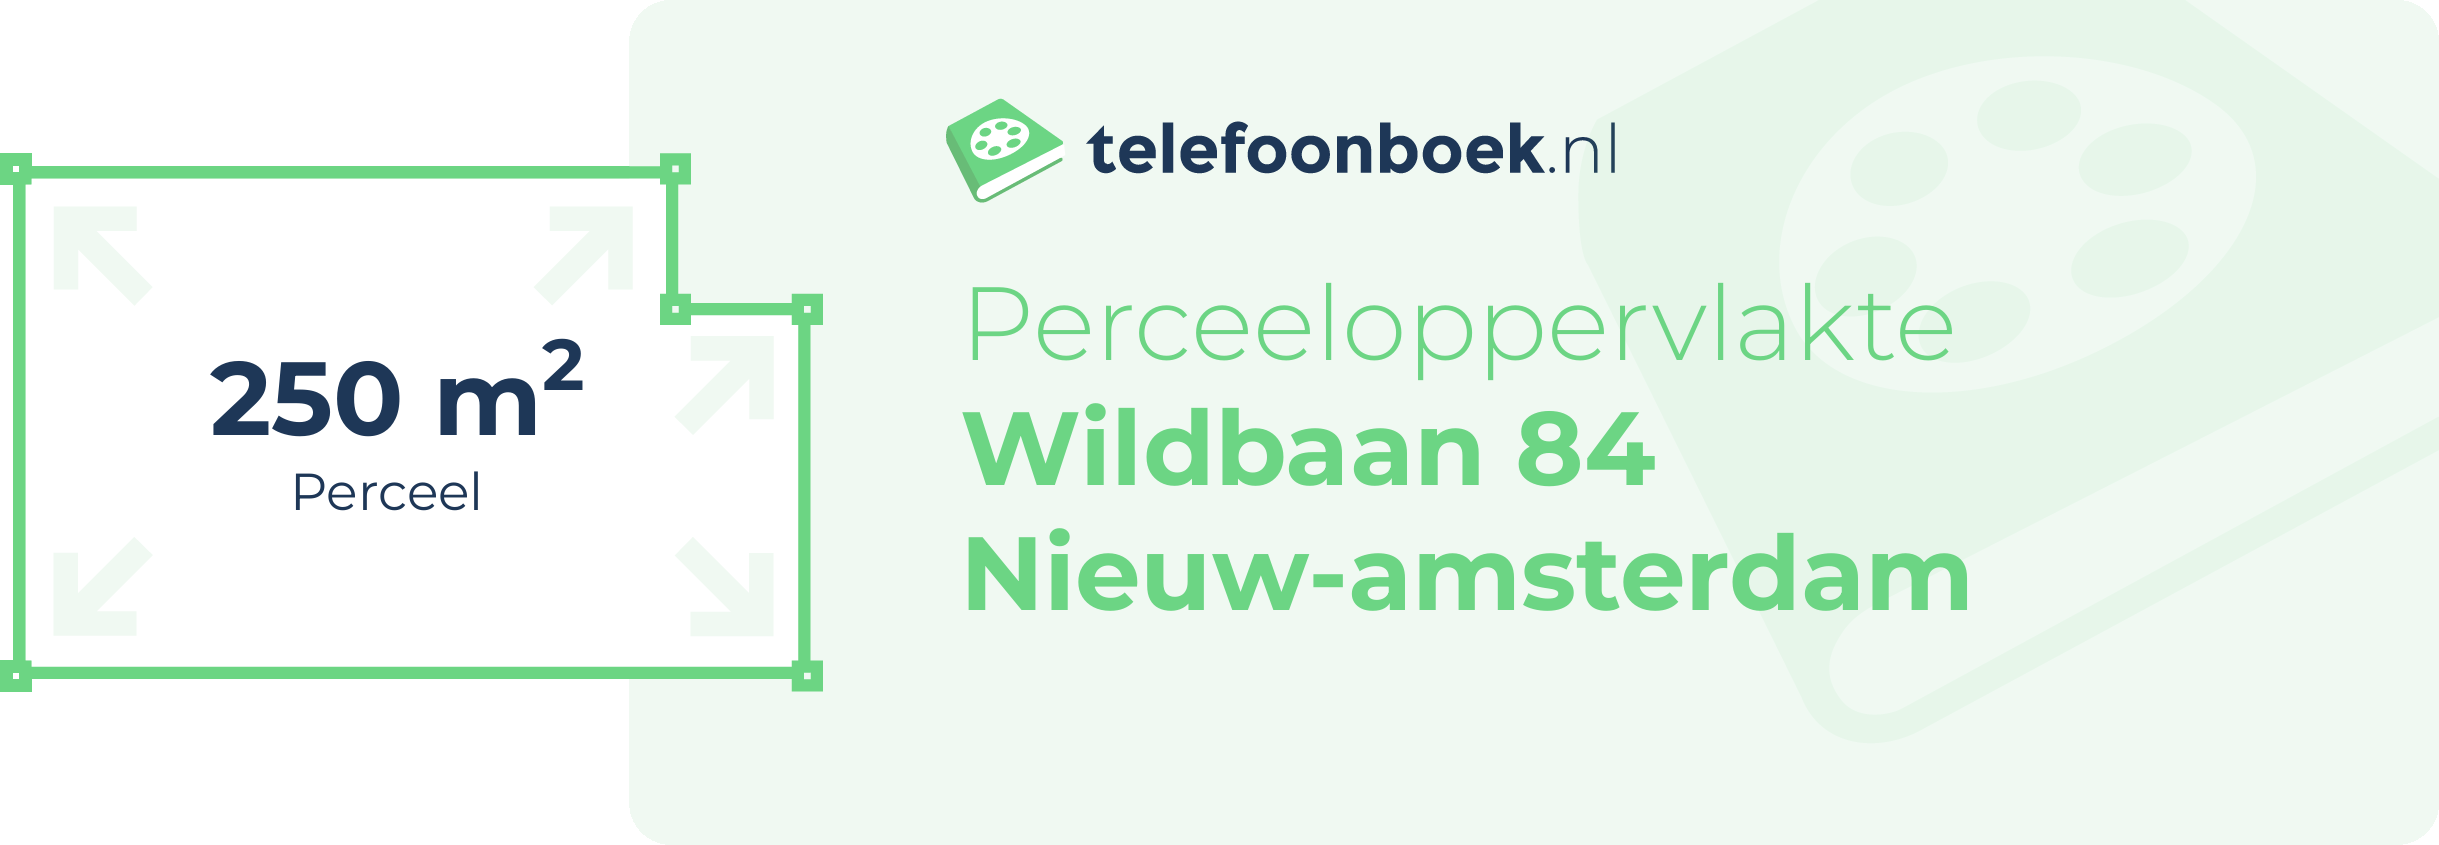 Perceeloppervlakte Wildbaan 84 Nieuw-Amsterdam